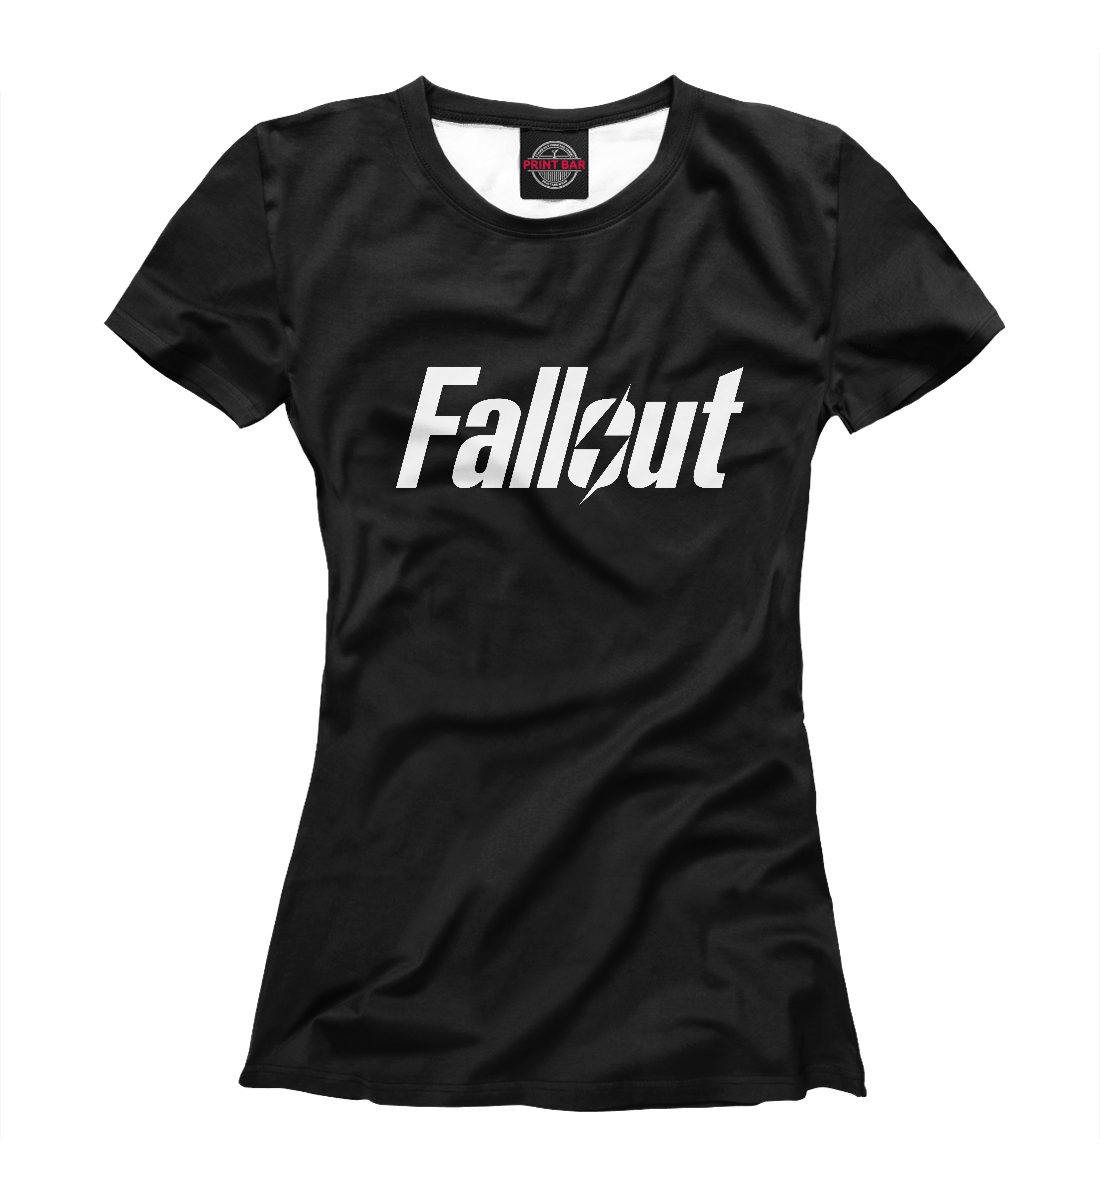 Футболка Fallout для девочек, артикул: FOT-773500-fut-1mp